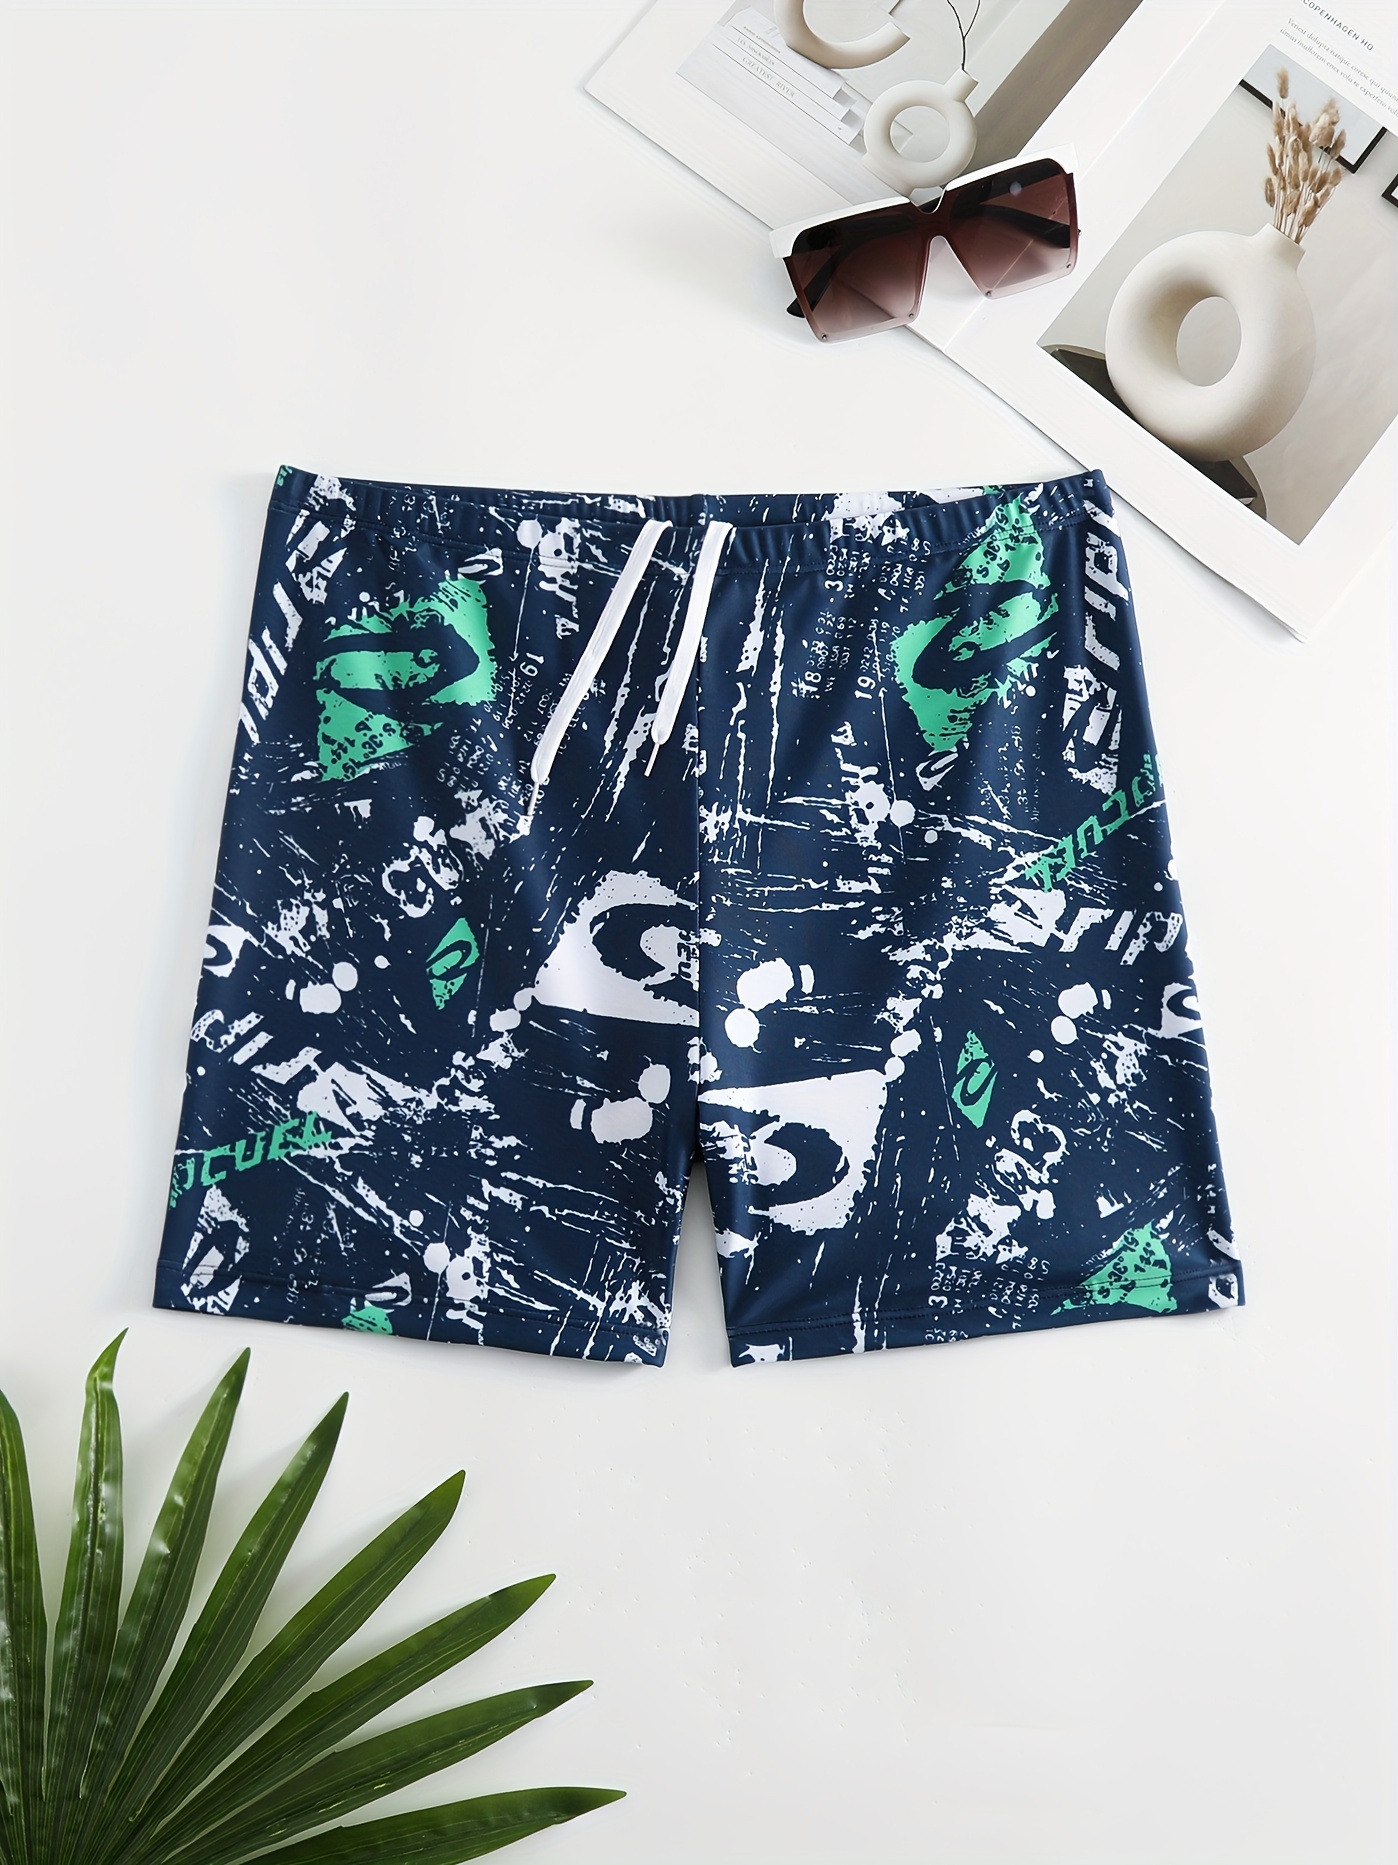 Bañador con estampado floral para hombre, size XL, shorts de playa, piscina.